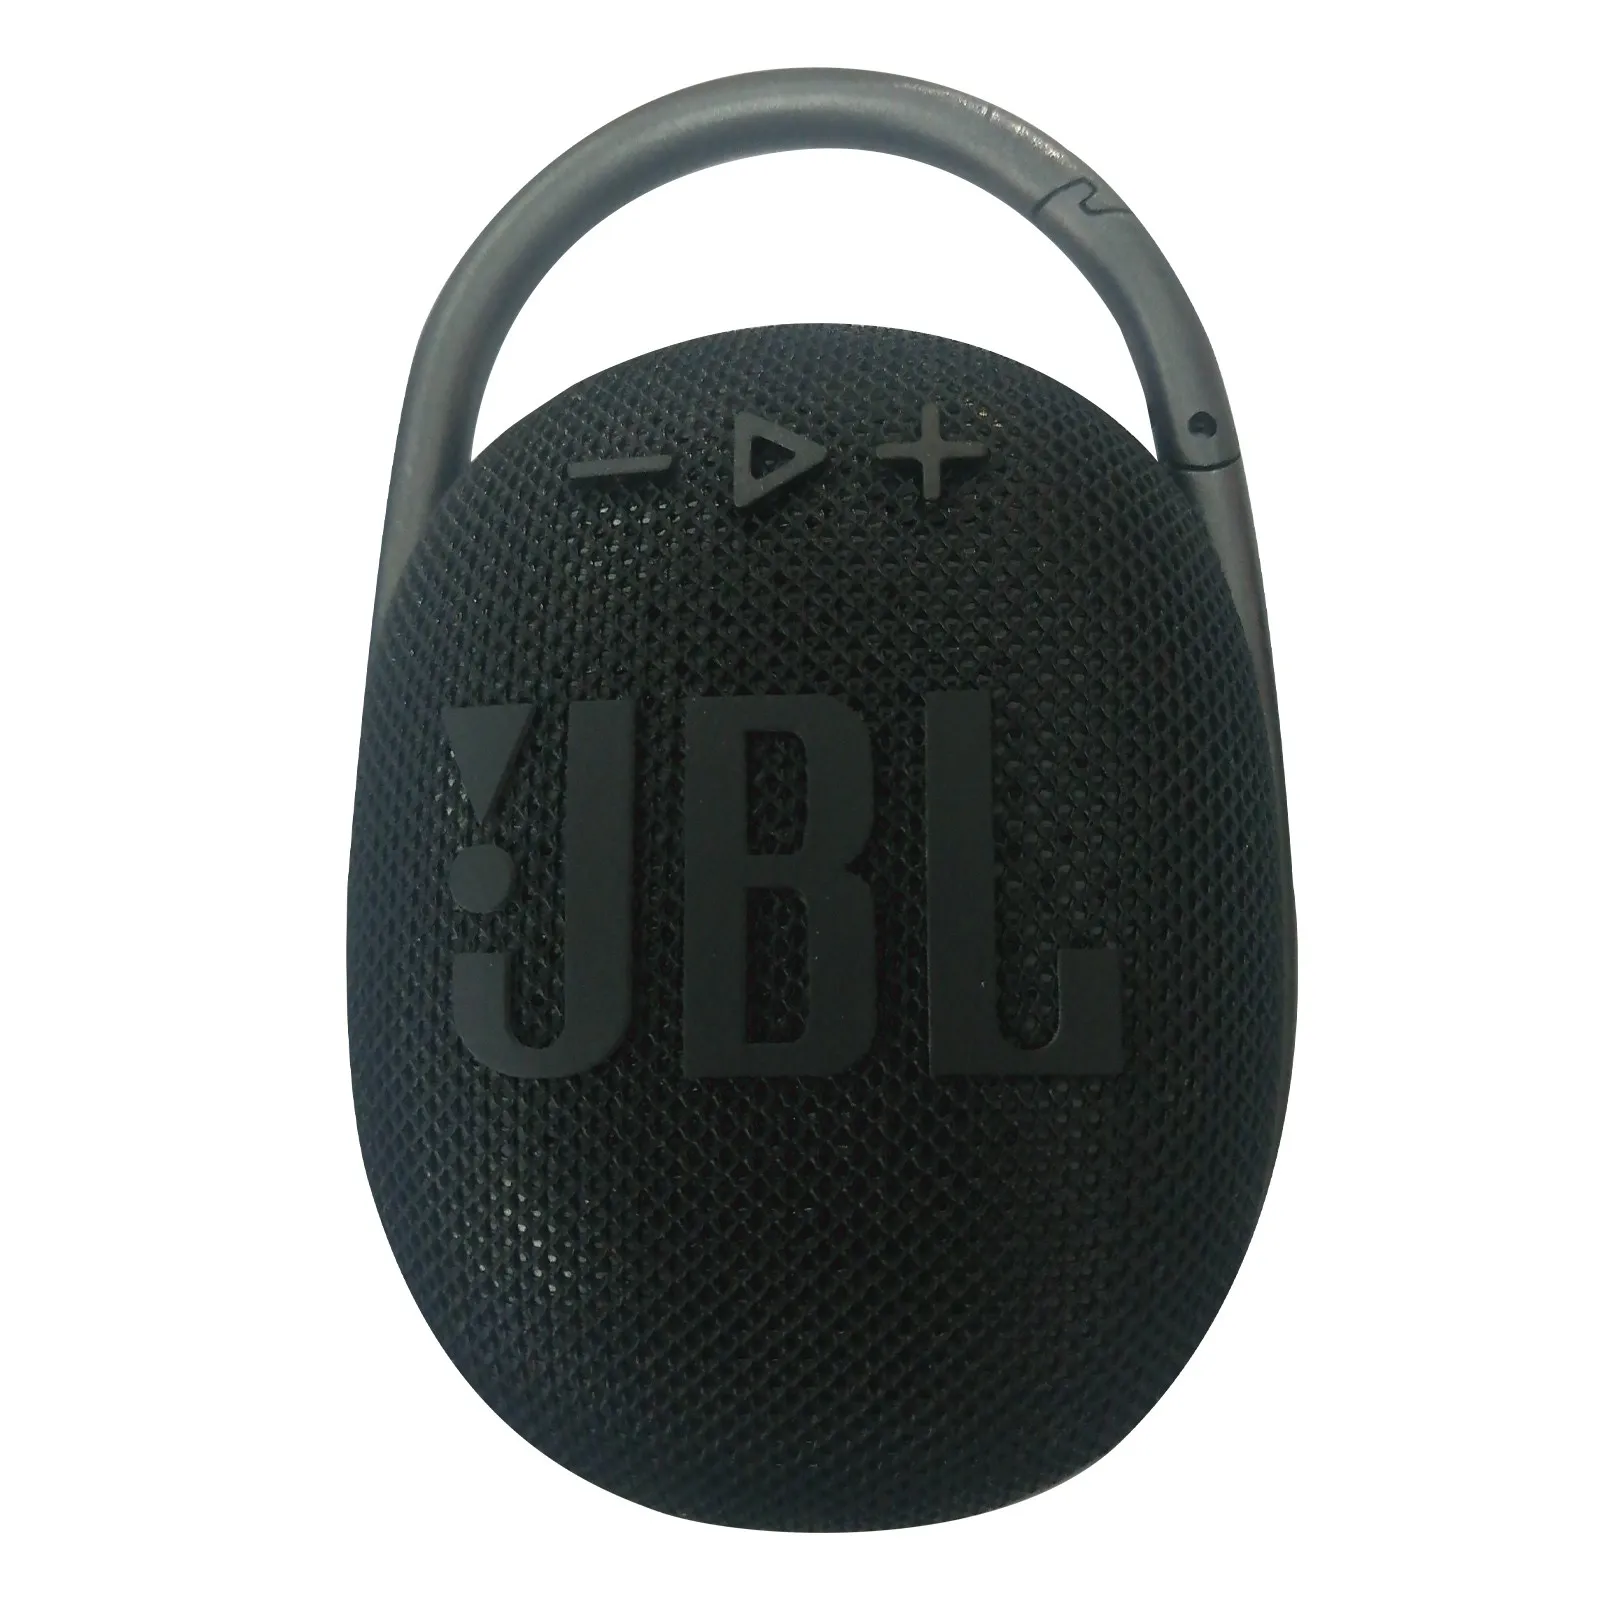 מקורי לjbl קליפ 4 אלחוטי Bluetooth 5.1 נייד מיני רמקולים Ip67 עמיד למים חיצוני עמוק בס צליל רמקולים עם וו